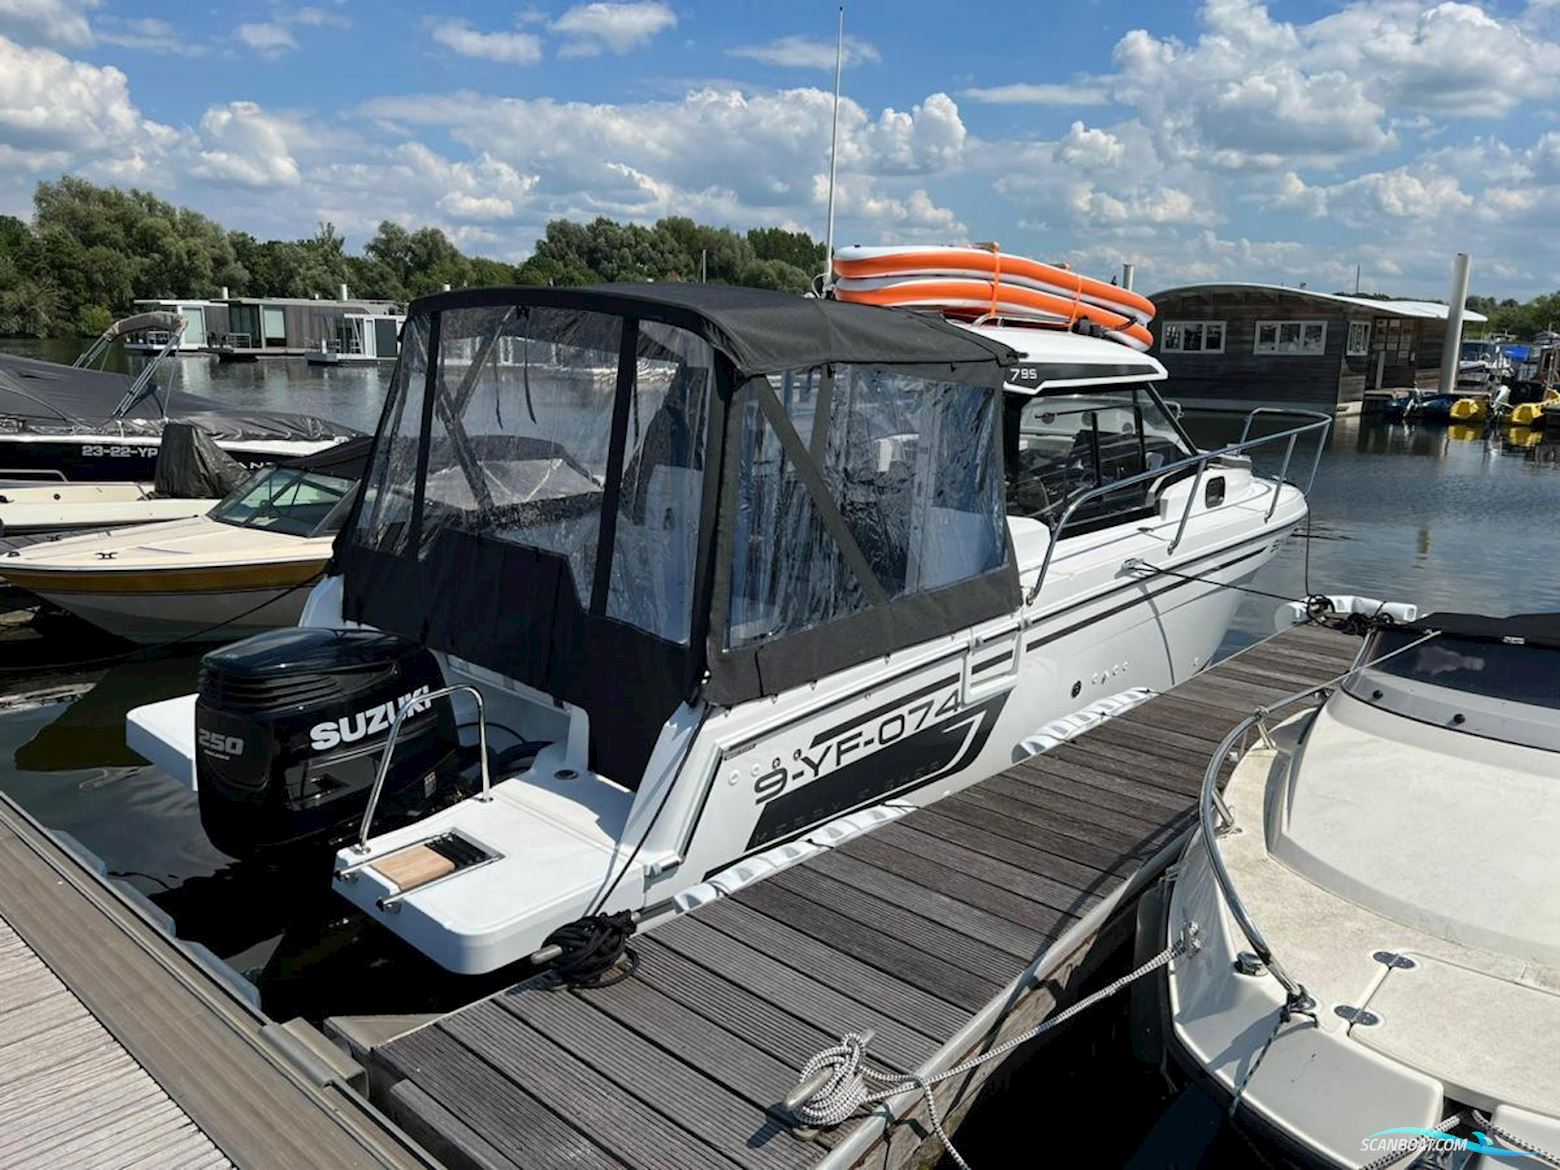 Jeanneau Merry Fisher 795 Serie 2 Motorbåt 2022, med Suzuki motor, Holland